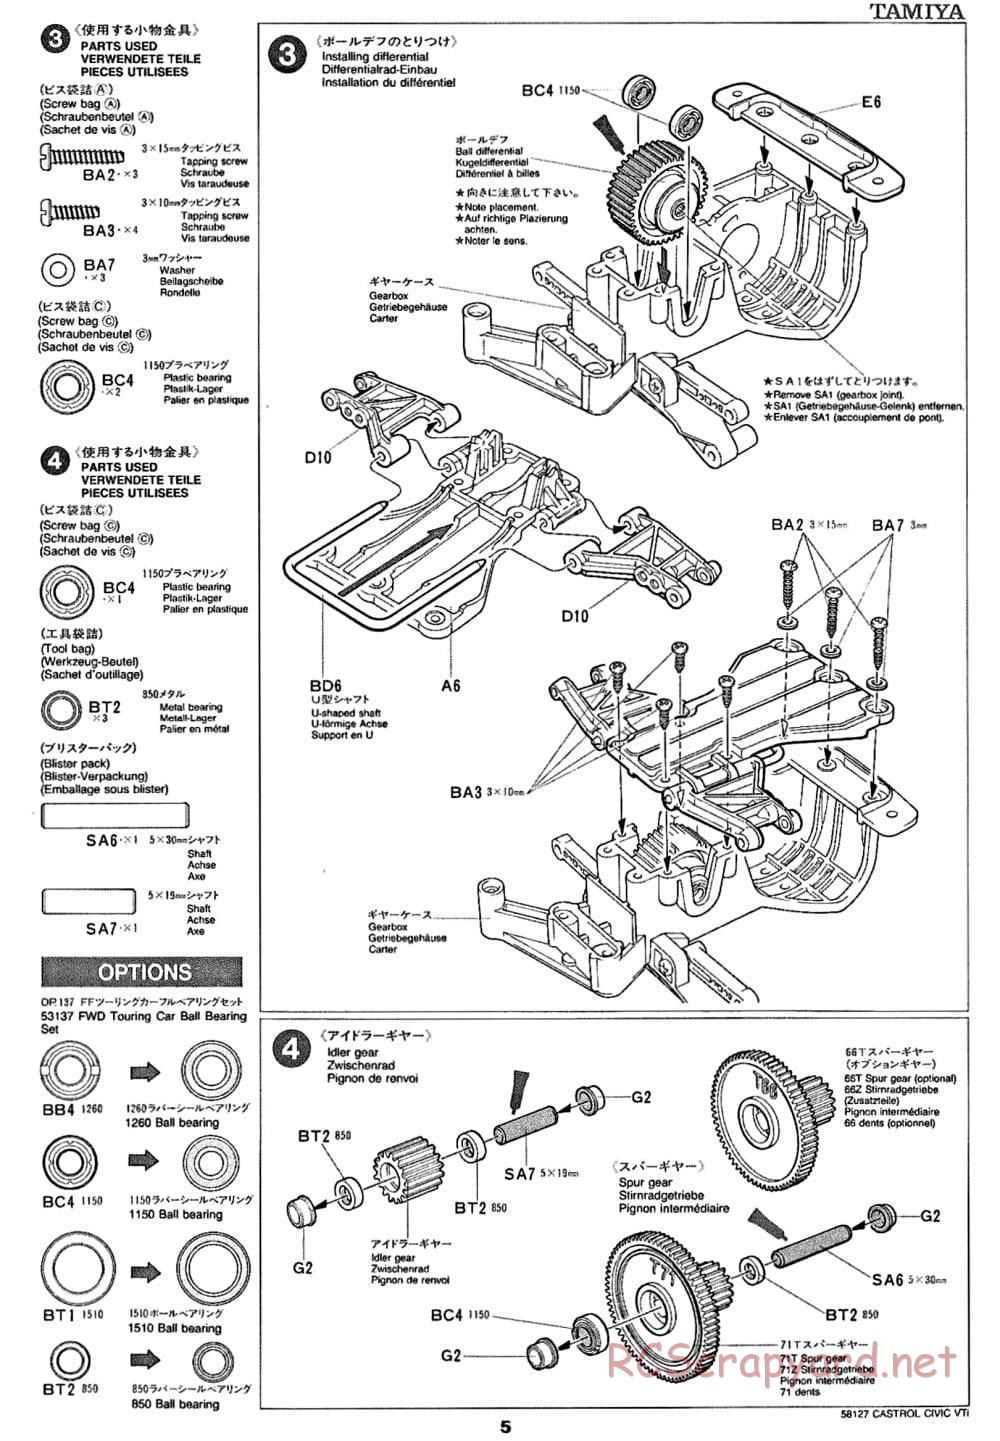 Tamiya - Castrol Honda Civic VTi - FF-01 Chassis - Manual - Page 5